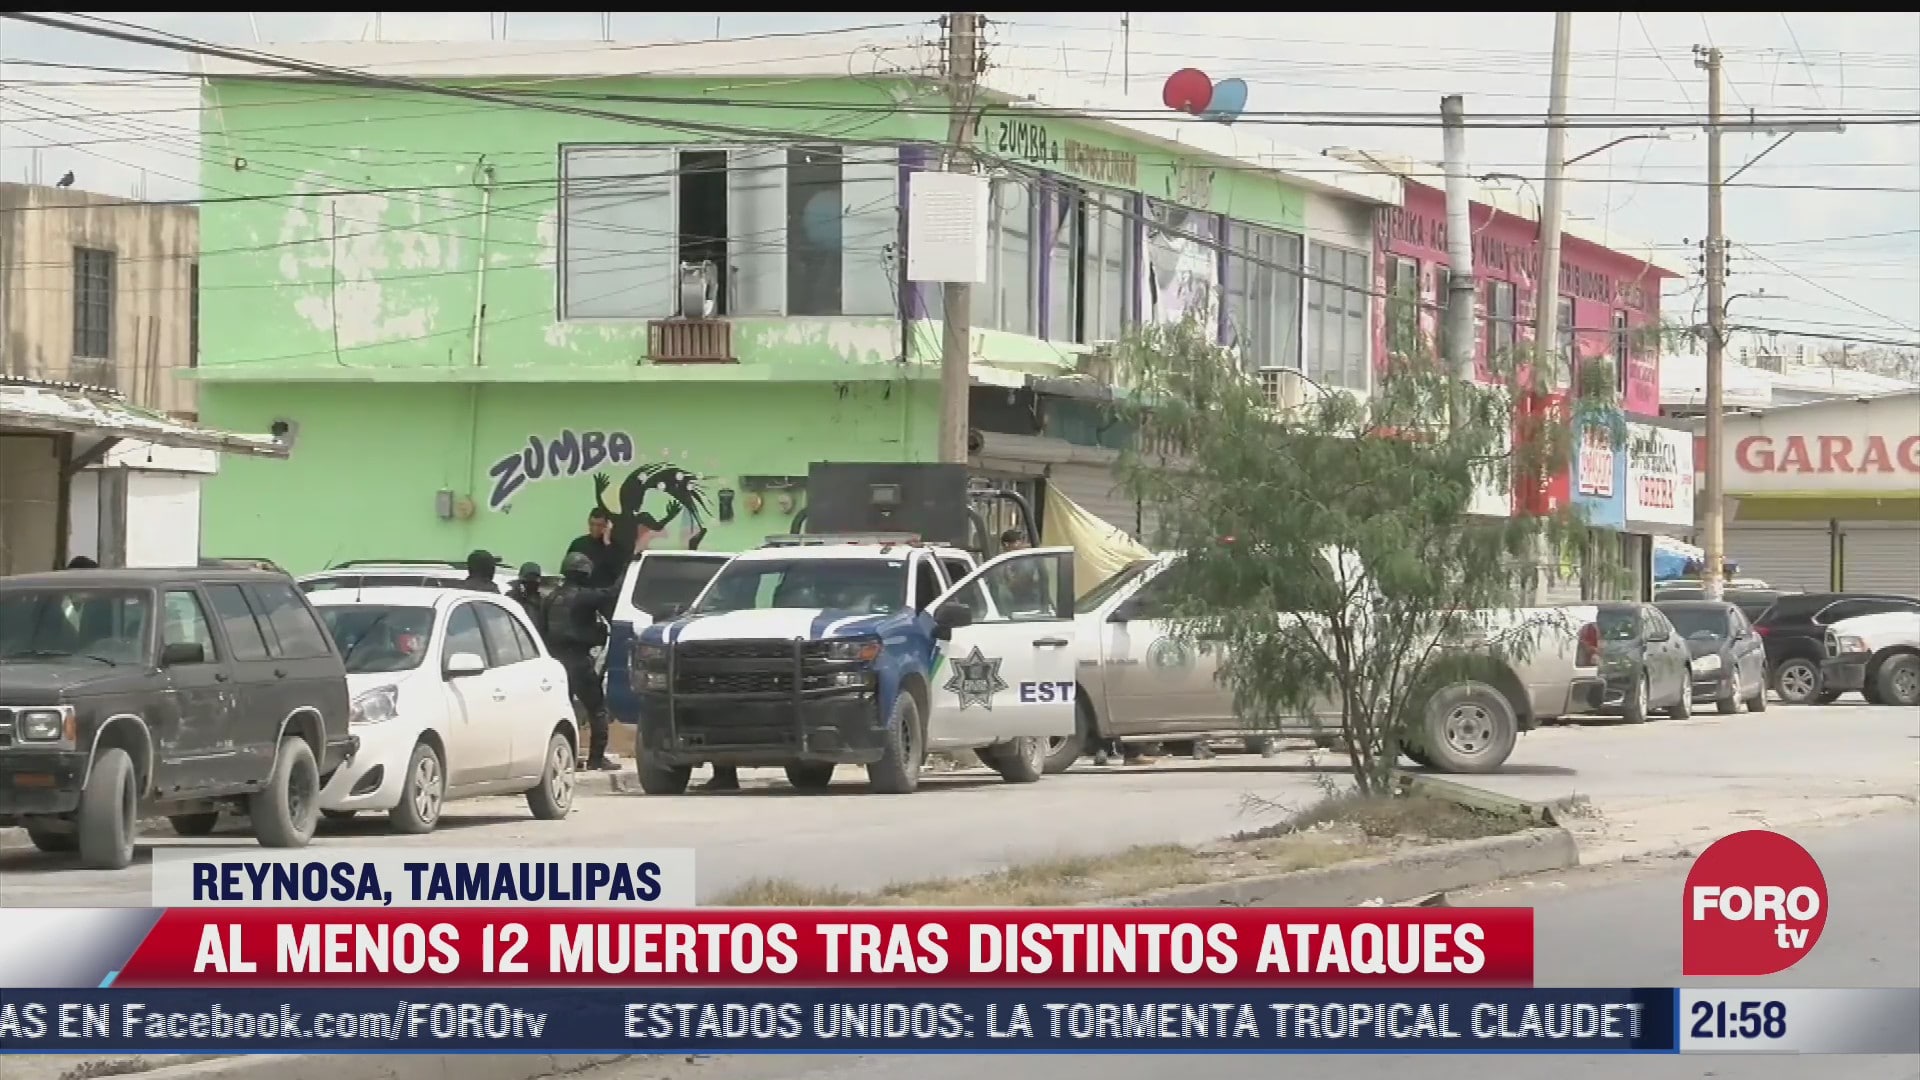 al menos 12 muertos tras distintos ataques en reynosa tamaulipas